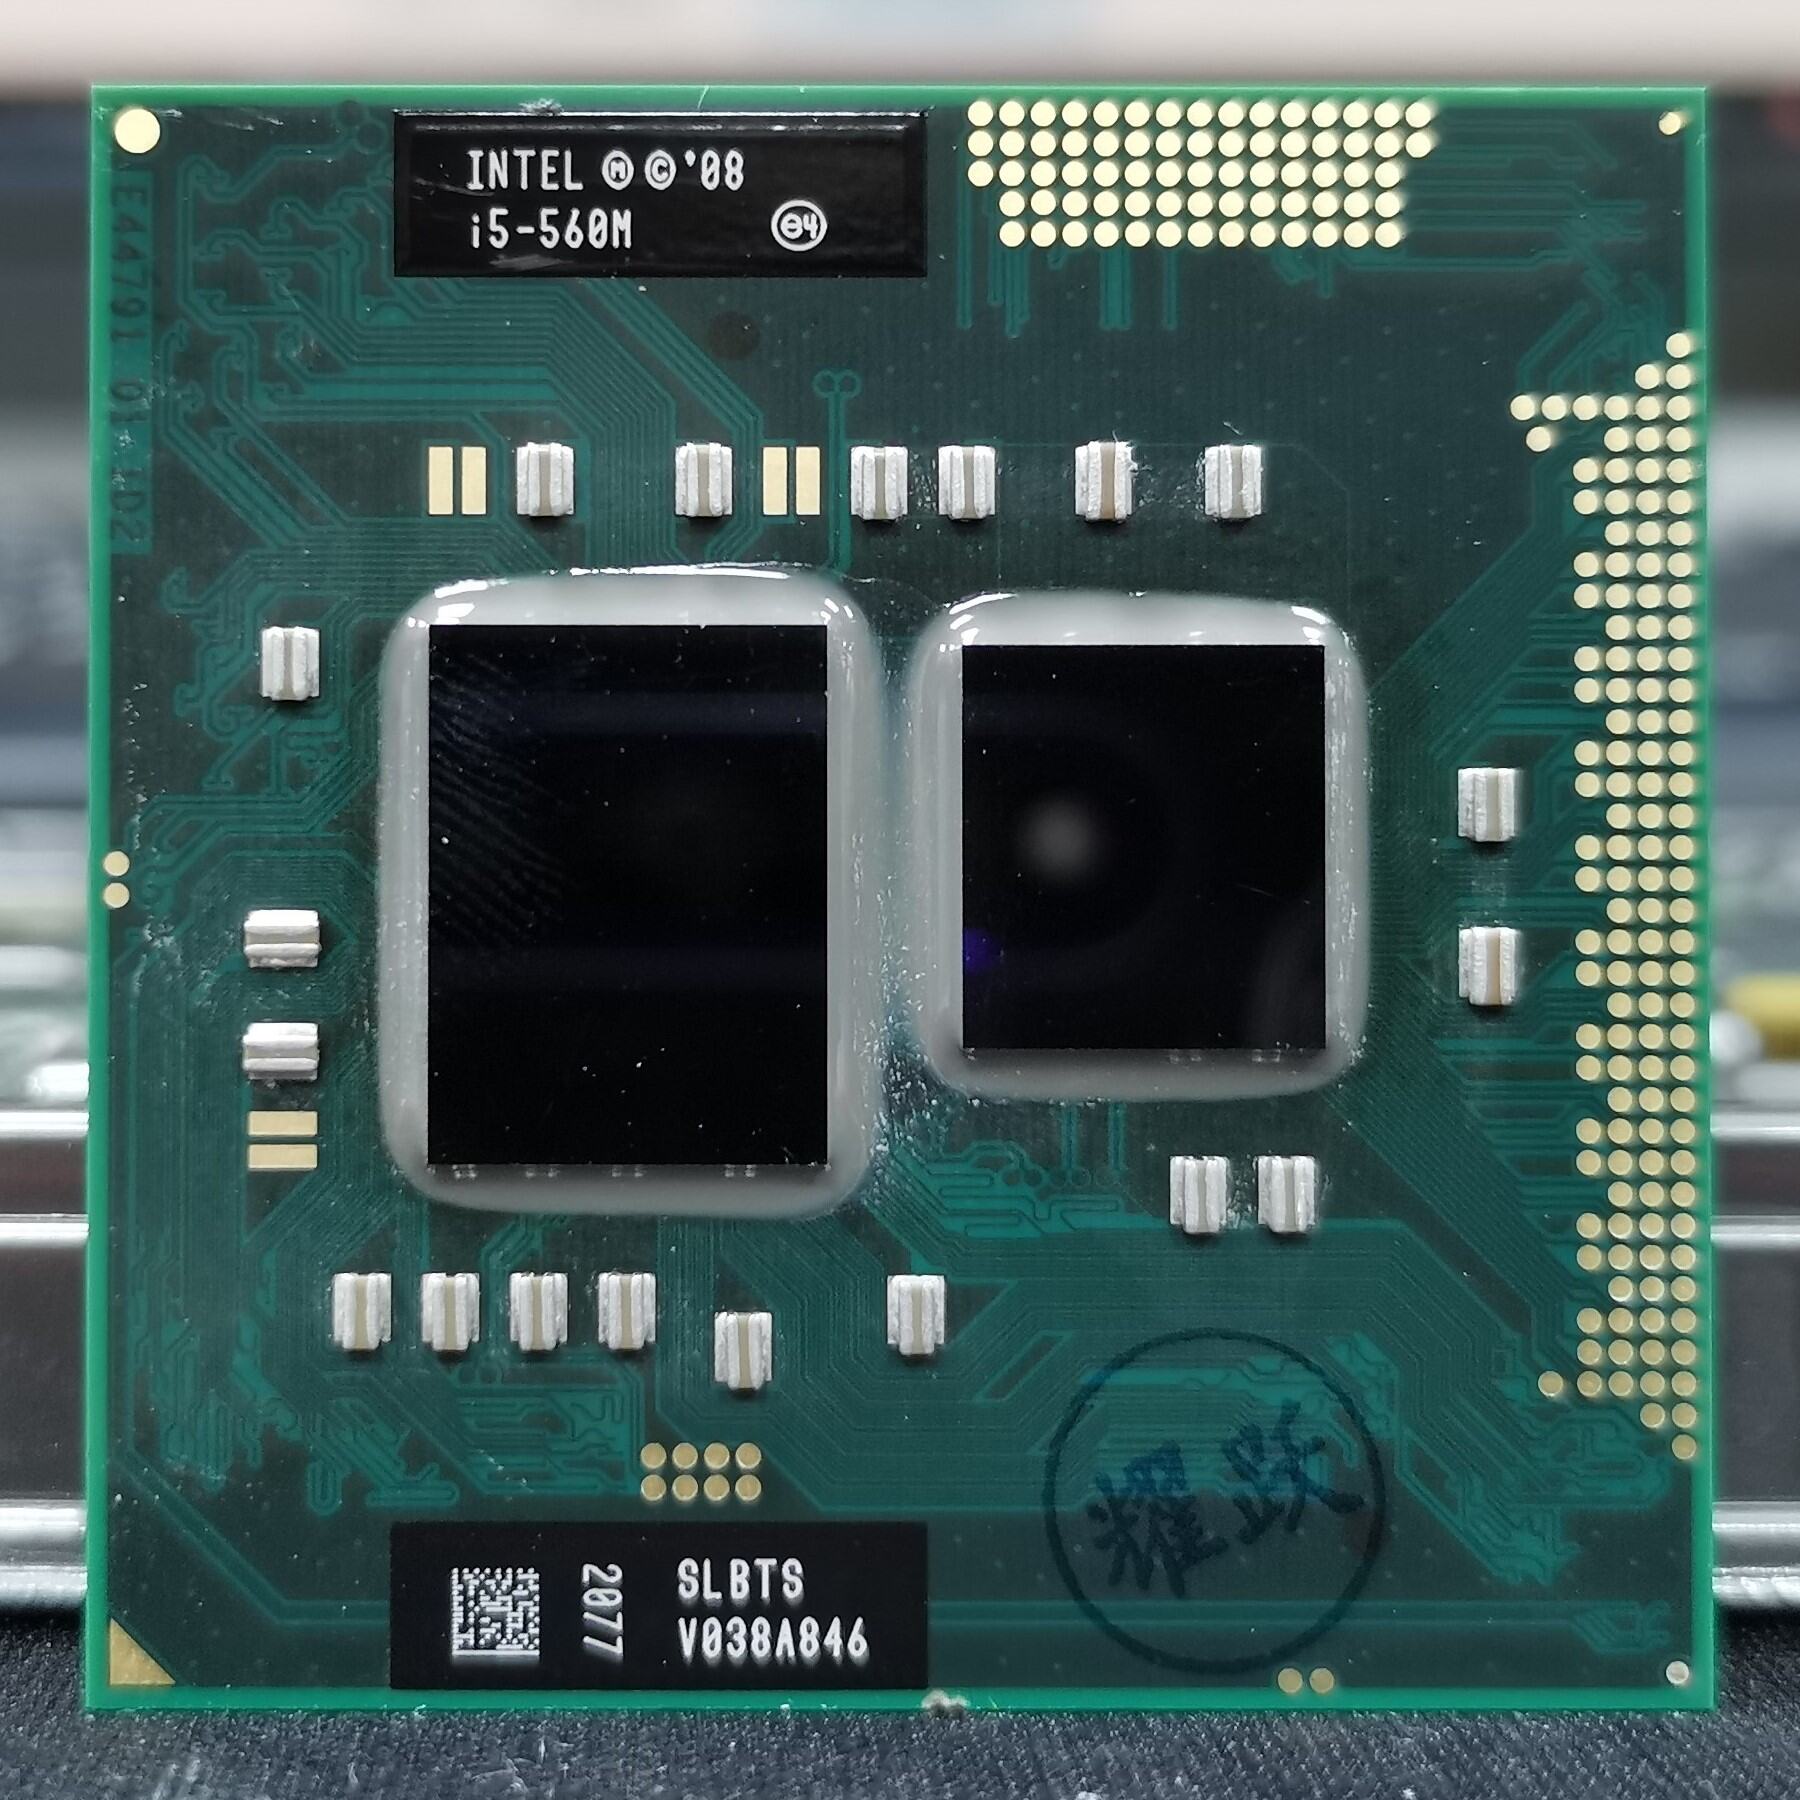 Bảng giá Intel I5 560M Lõi Kép 4 Luồng Nguyên Kim Sổ Tay CPU Nâng Cấp Chipset Hm55 Phong Vũ